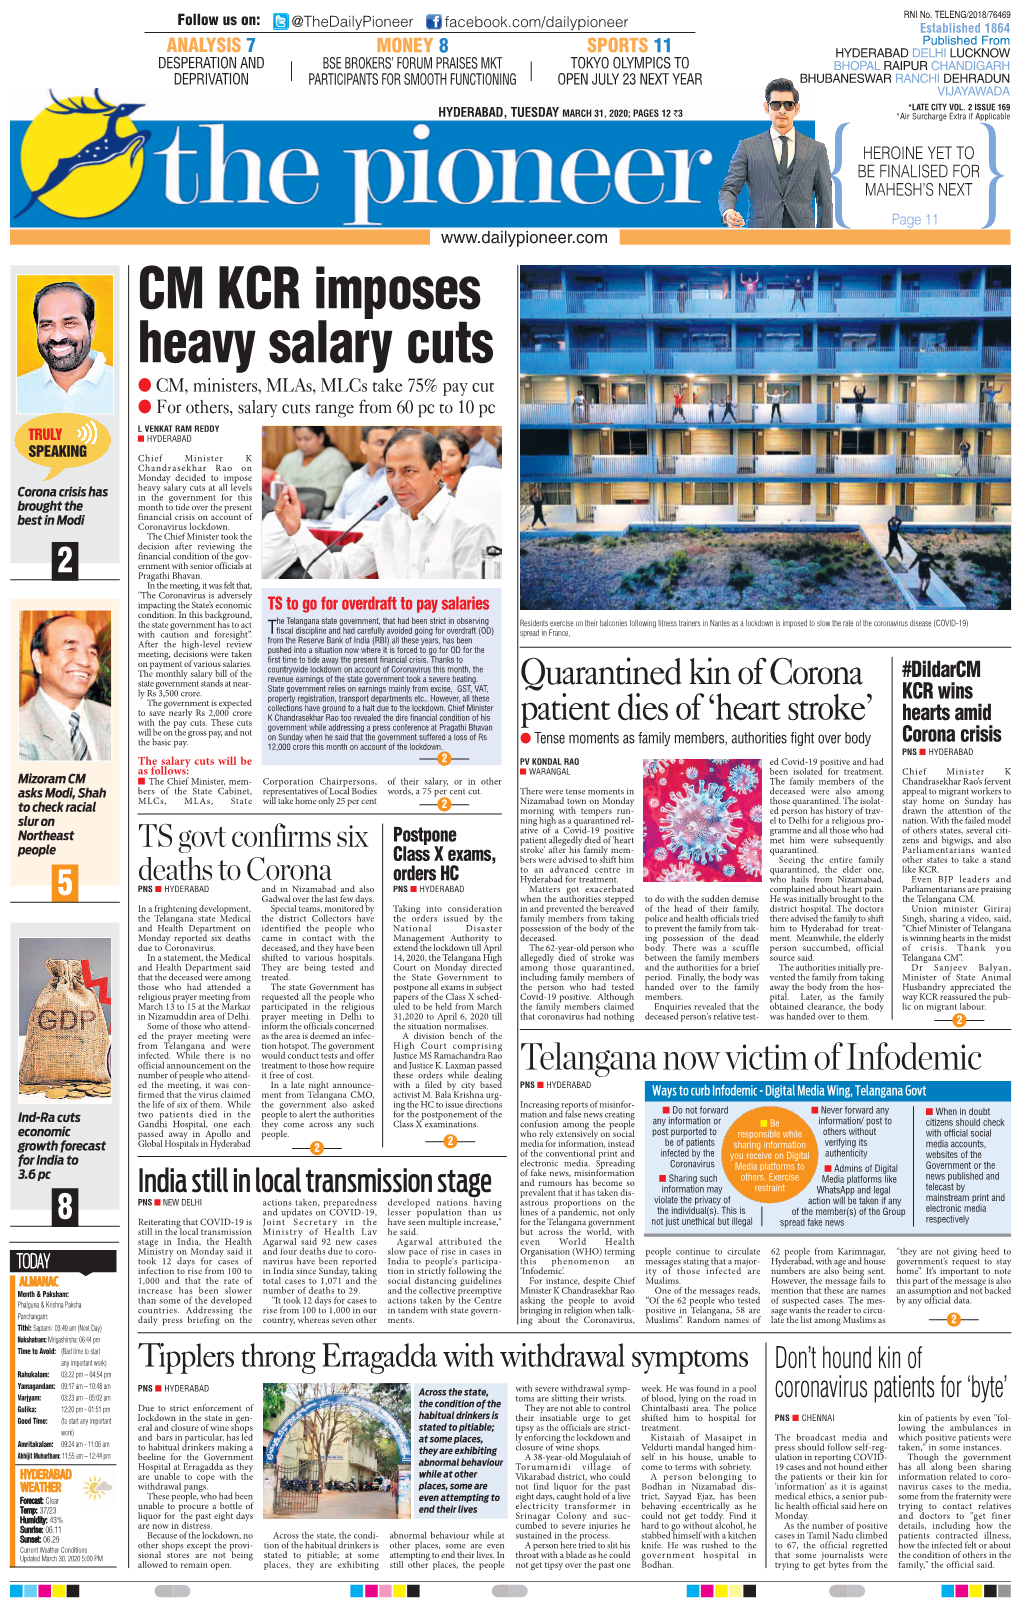 CM KCR Imposes Heavy Salary Cuts